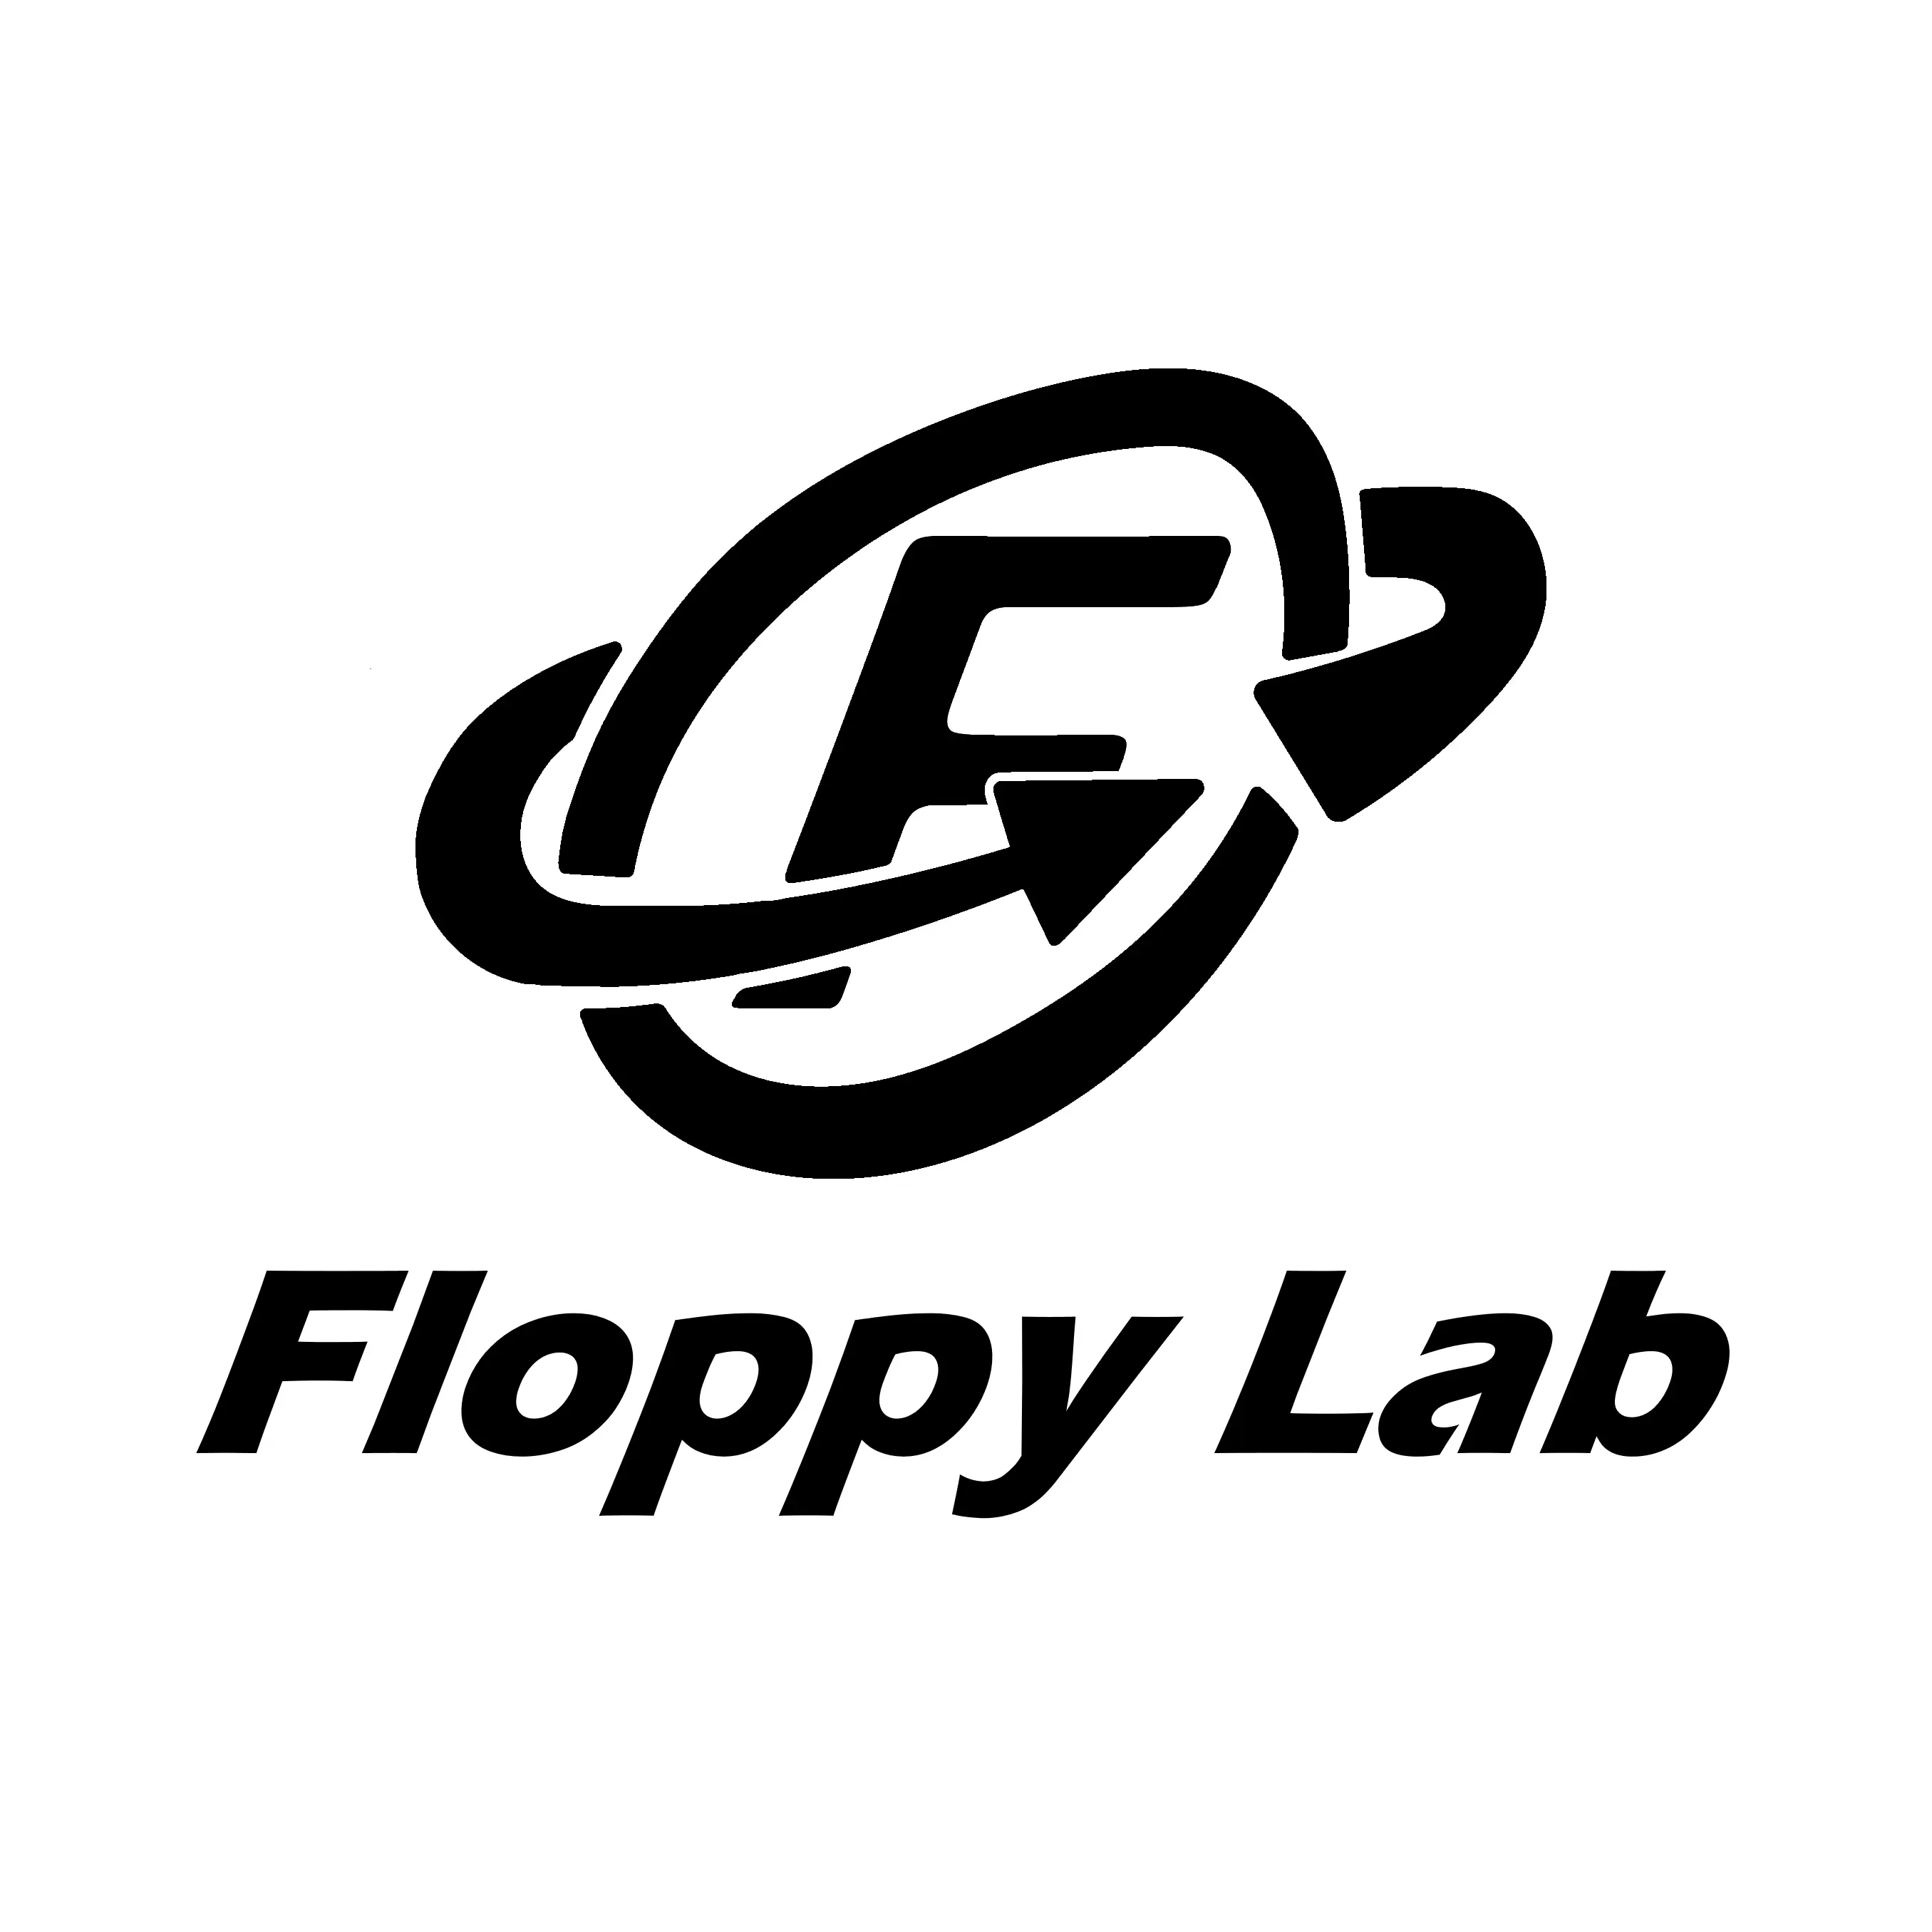 Floppy Lab